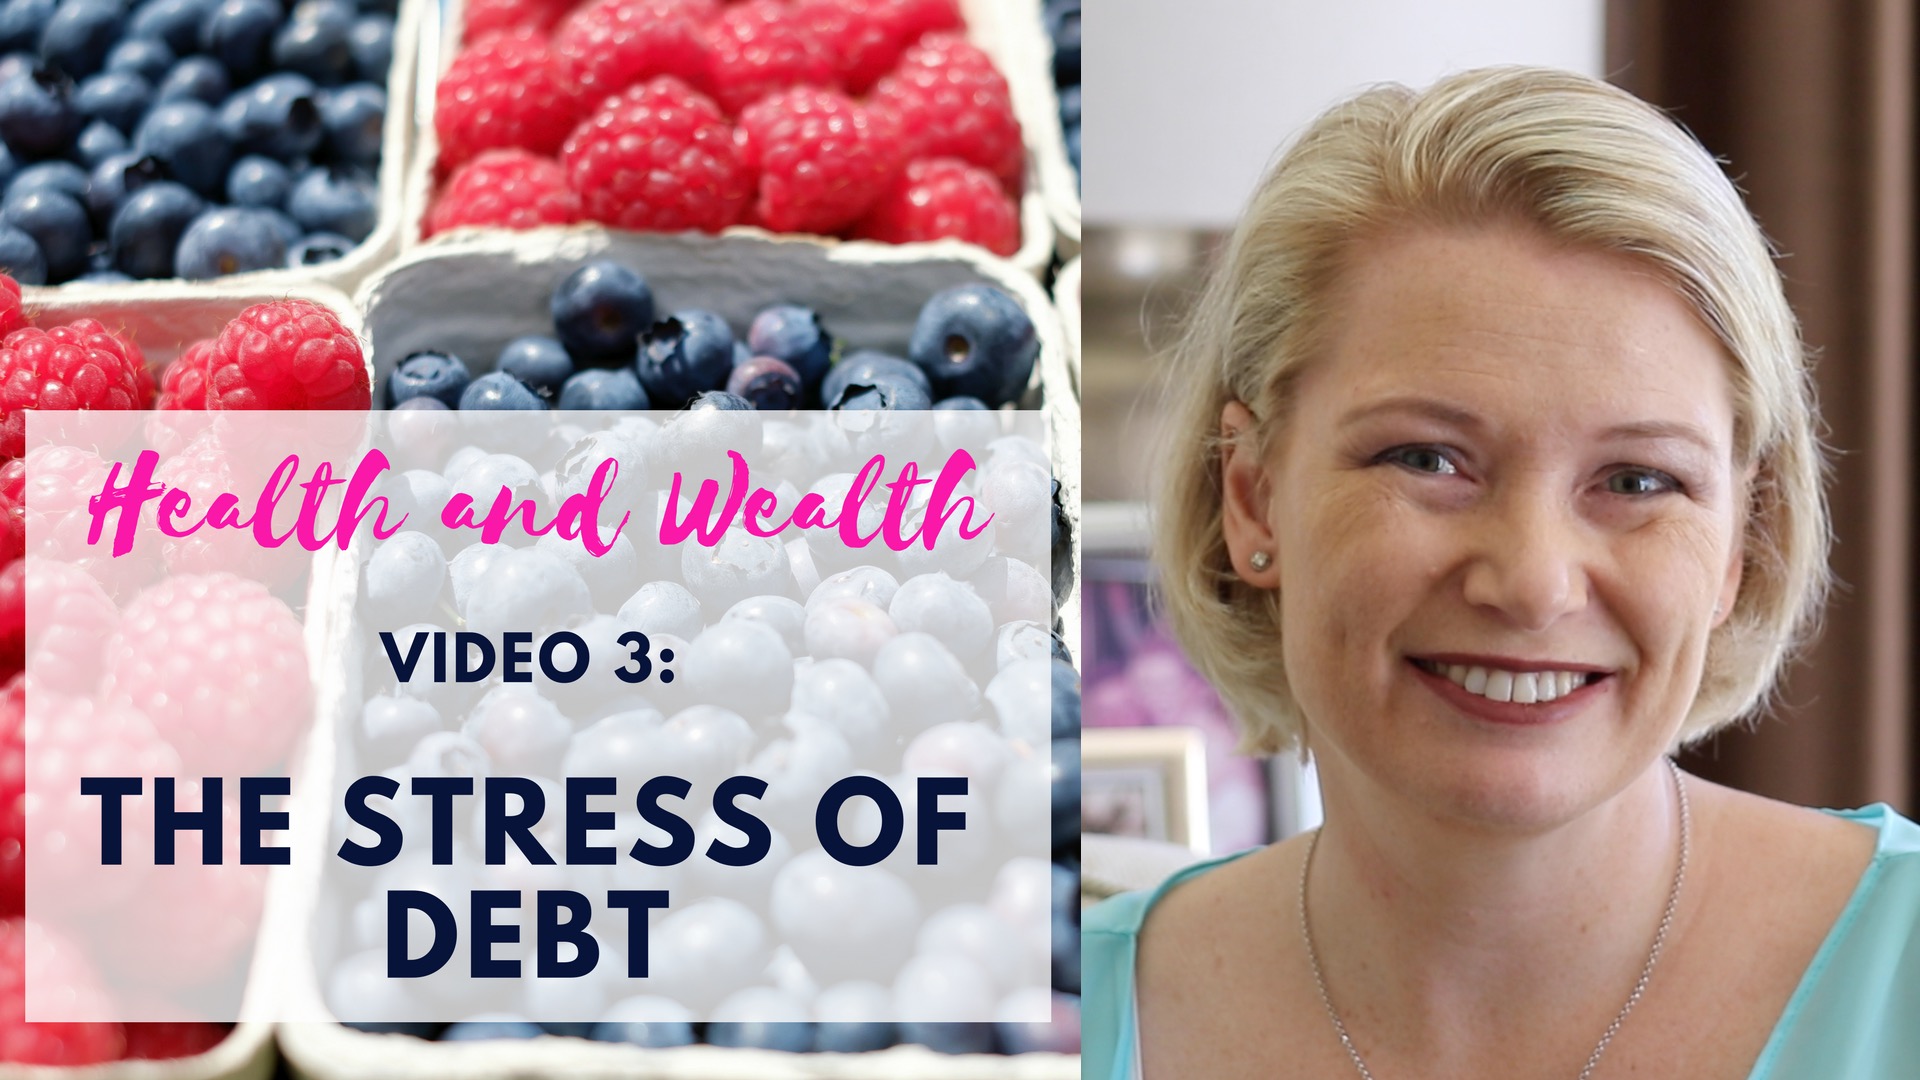 Video 4 – The Heartbreak of debt